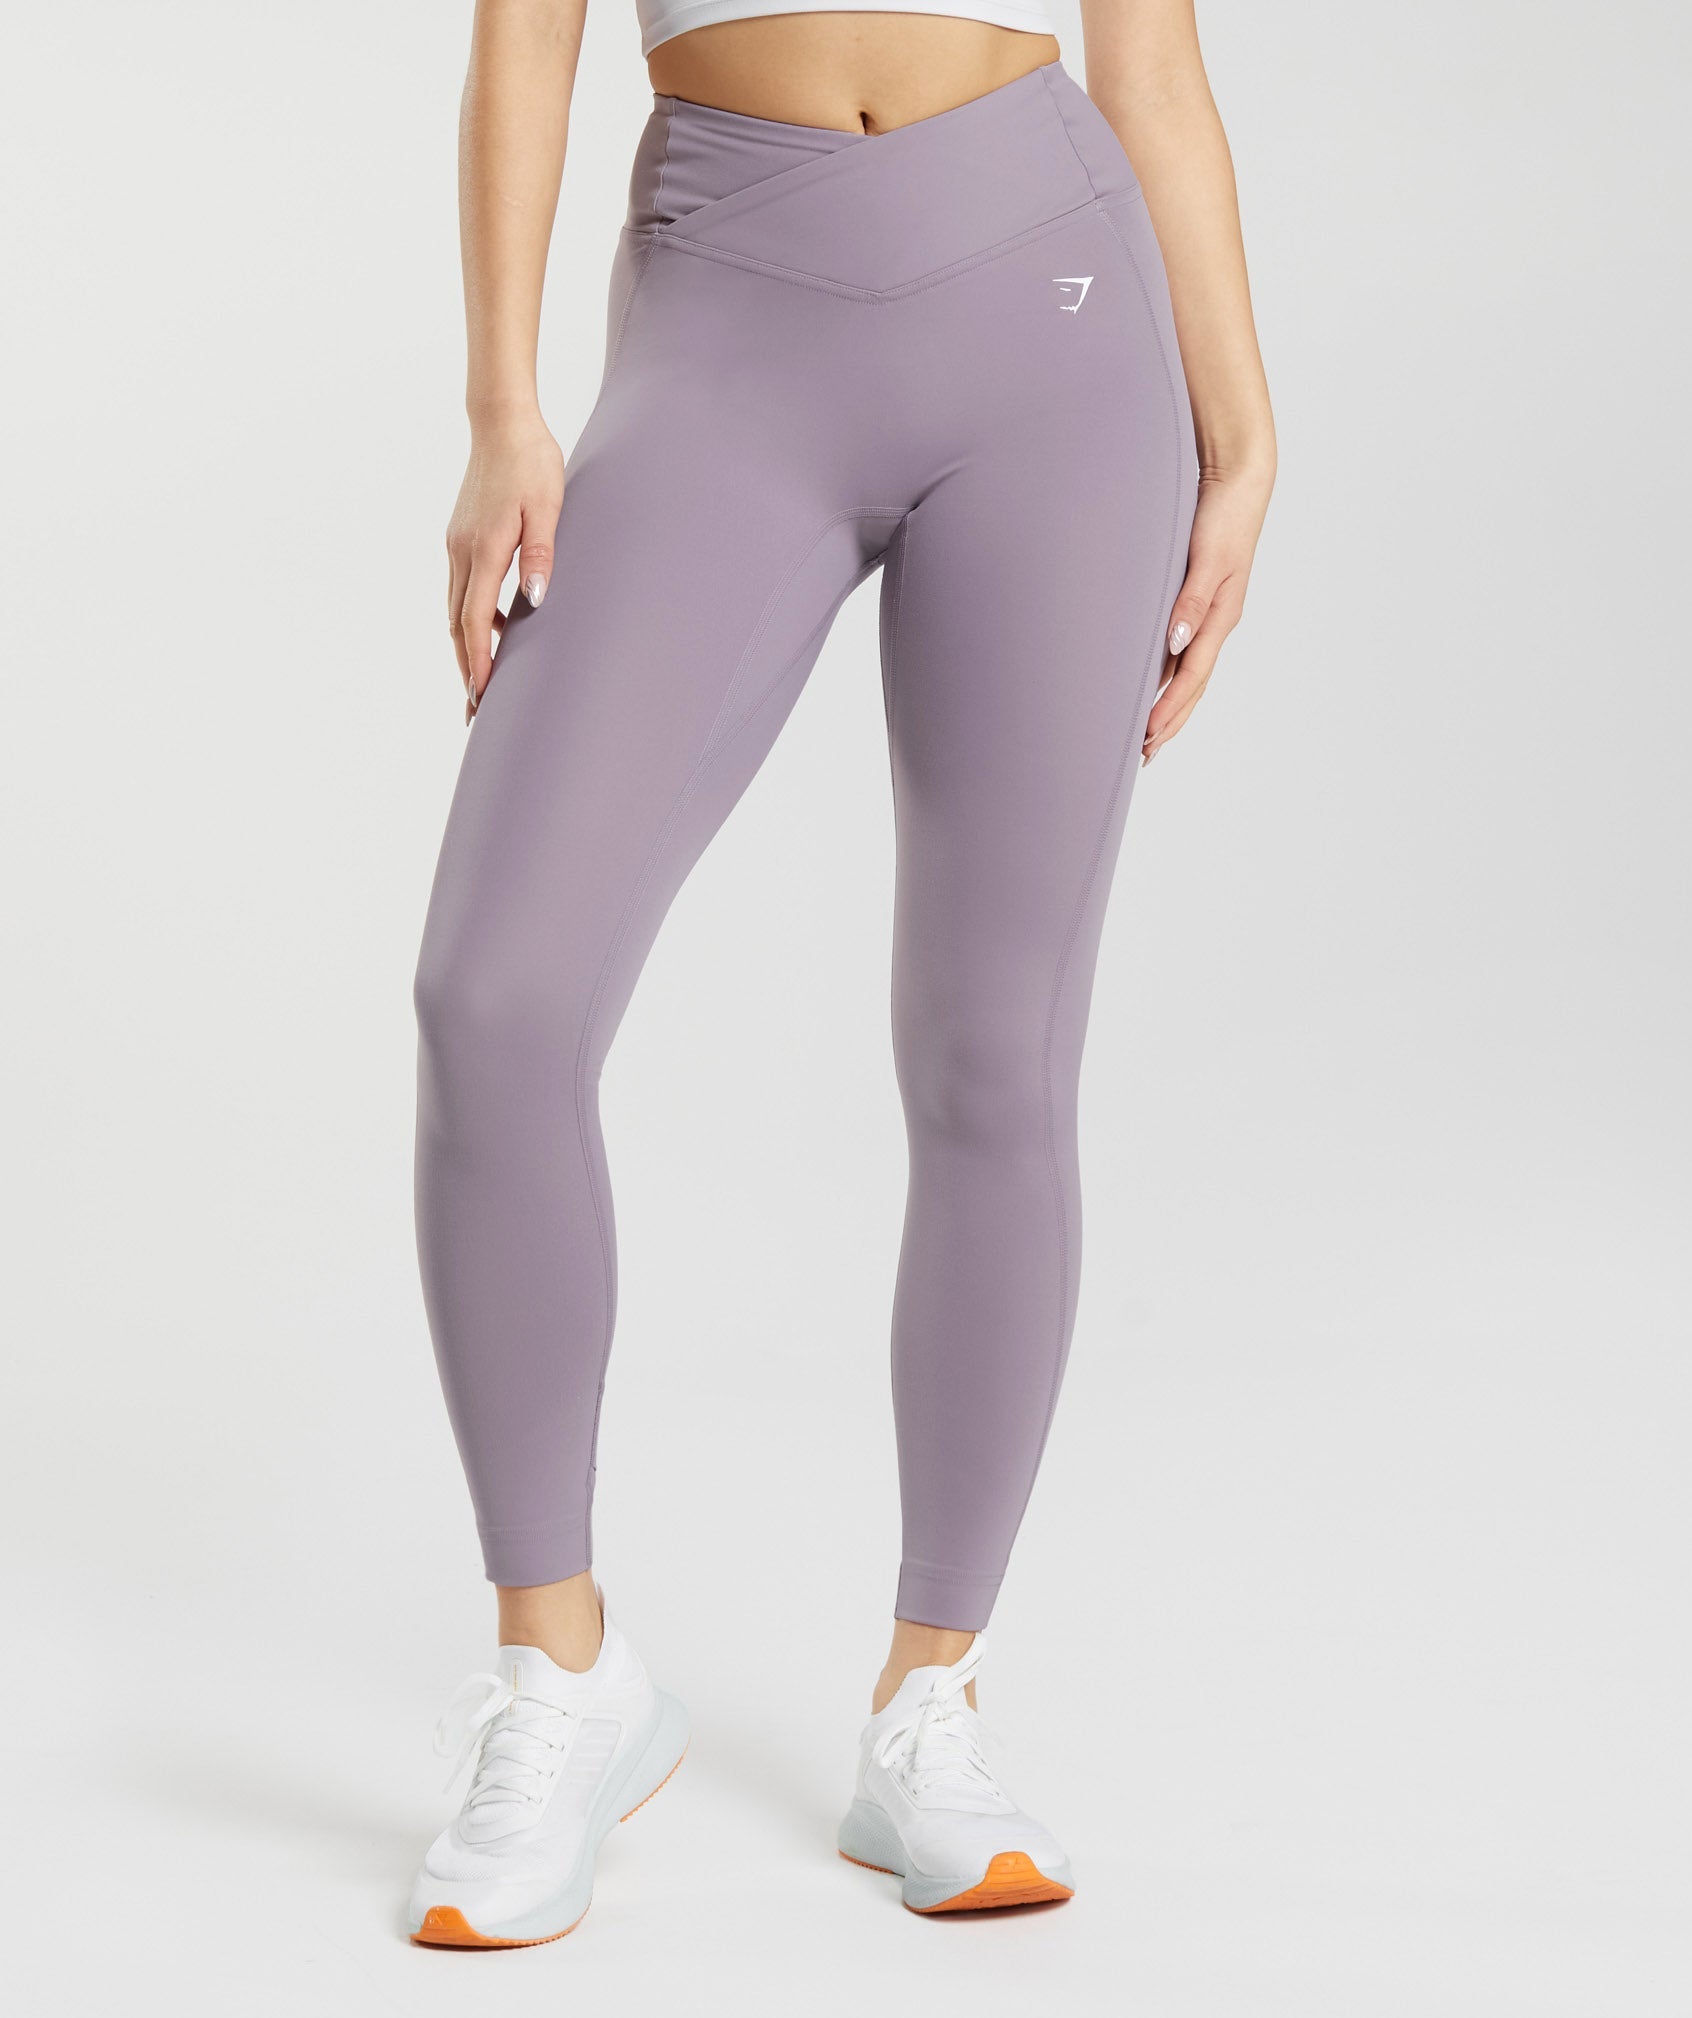 Gymshark - Purple gymshark energy seamless leggings on Designer